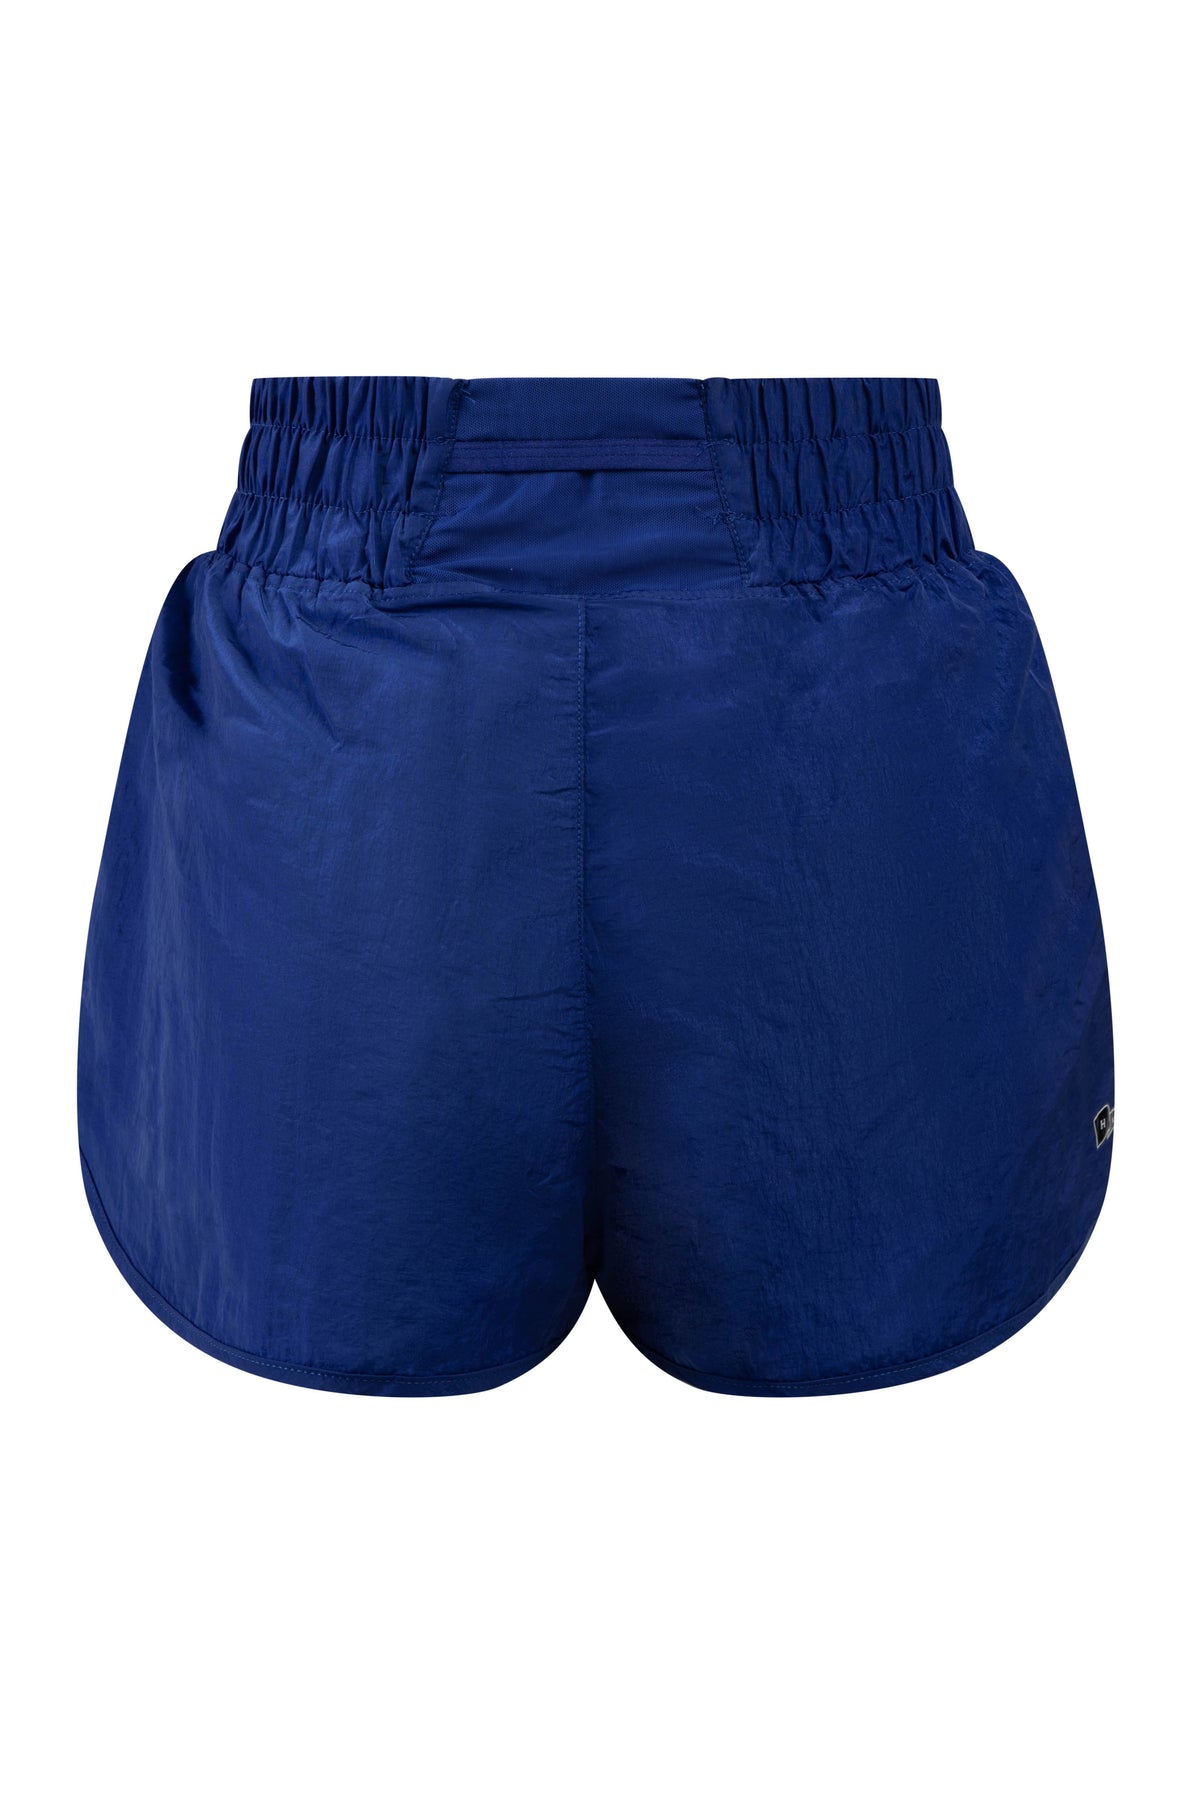 Hampton University Boxer Shorts